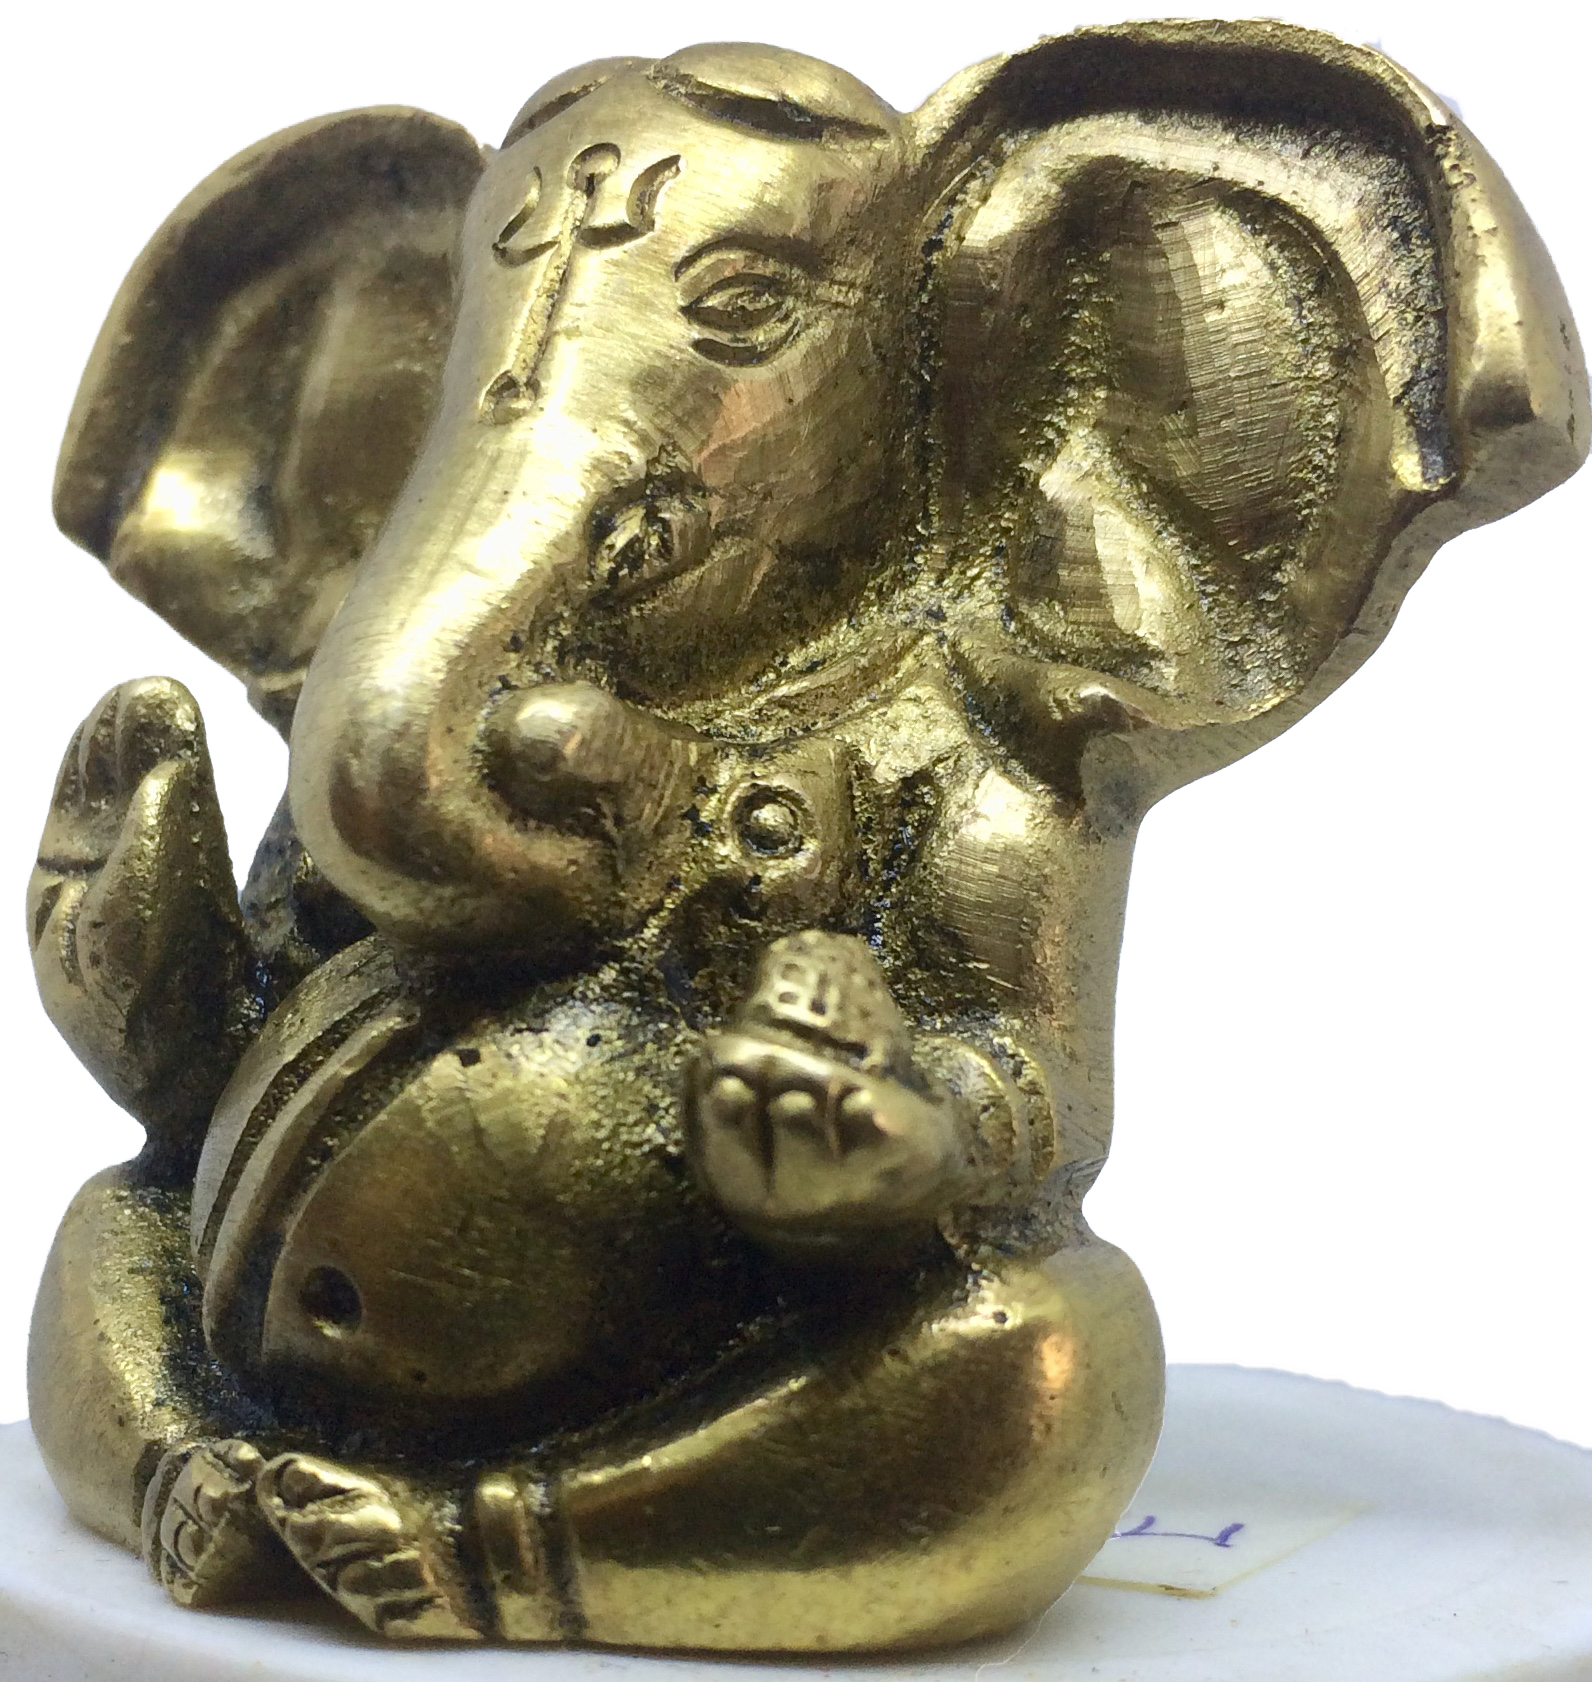 3.Ganesh-bronze-doré